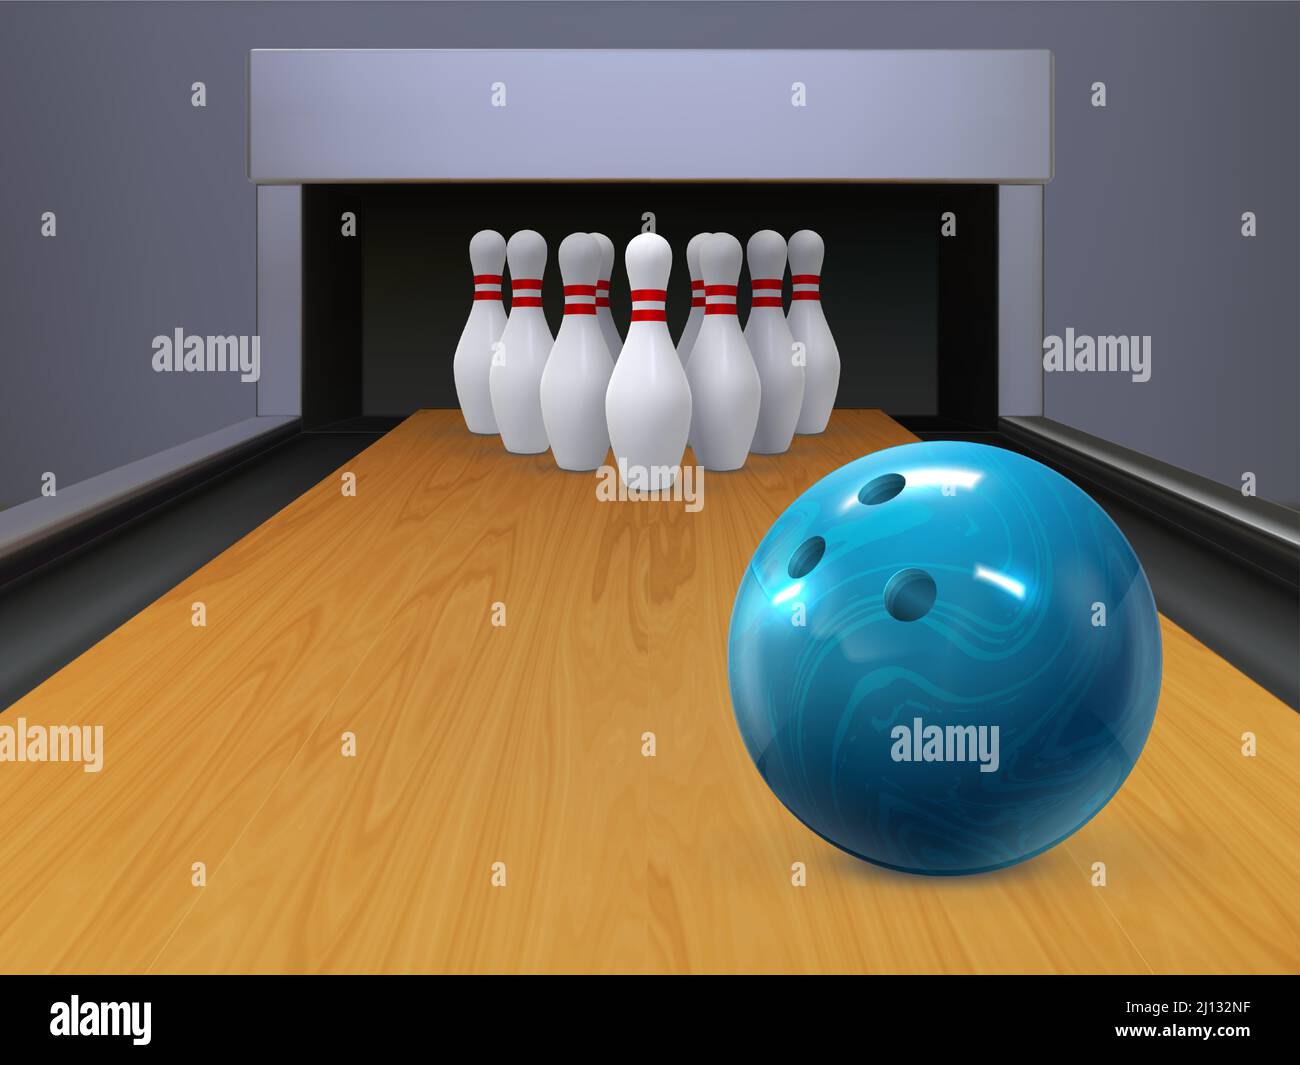 Realistische Bowlingholzbahn mit rollendem Ball und Kegelstiften. Sport Bowl Spiel Wettbewerb Alley. Bowling Club spielen Vektor Hintergrund Stock Vektor